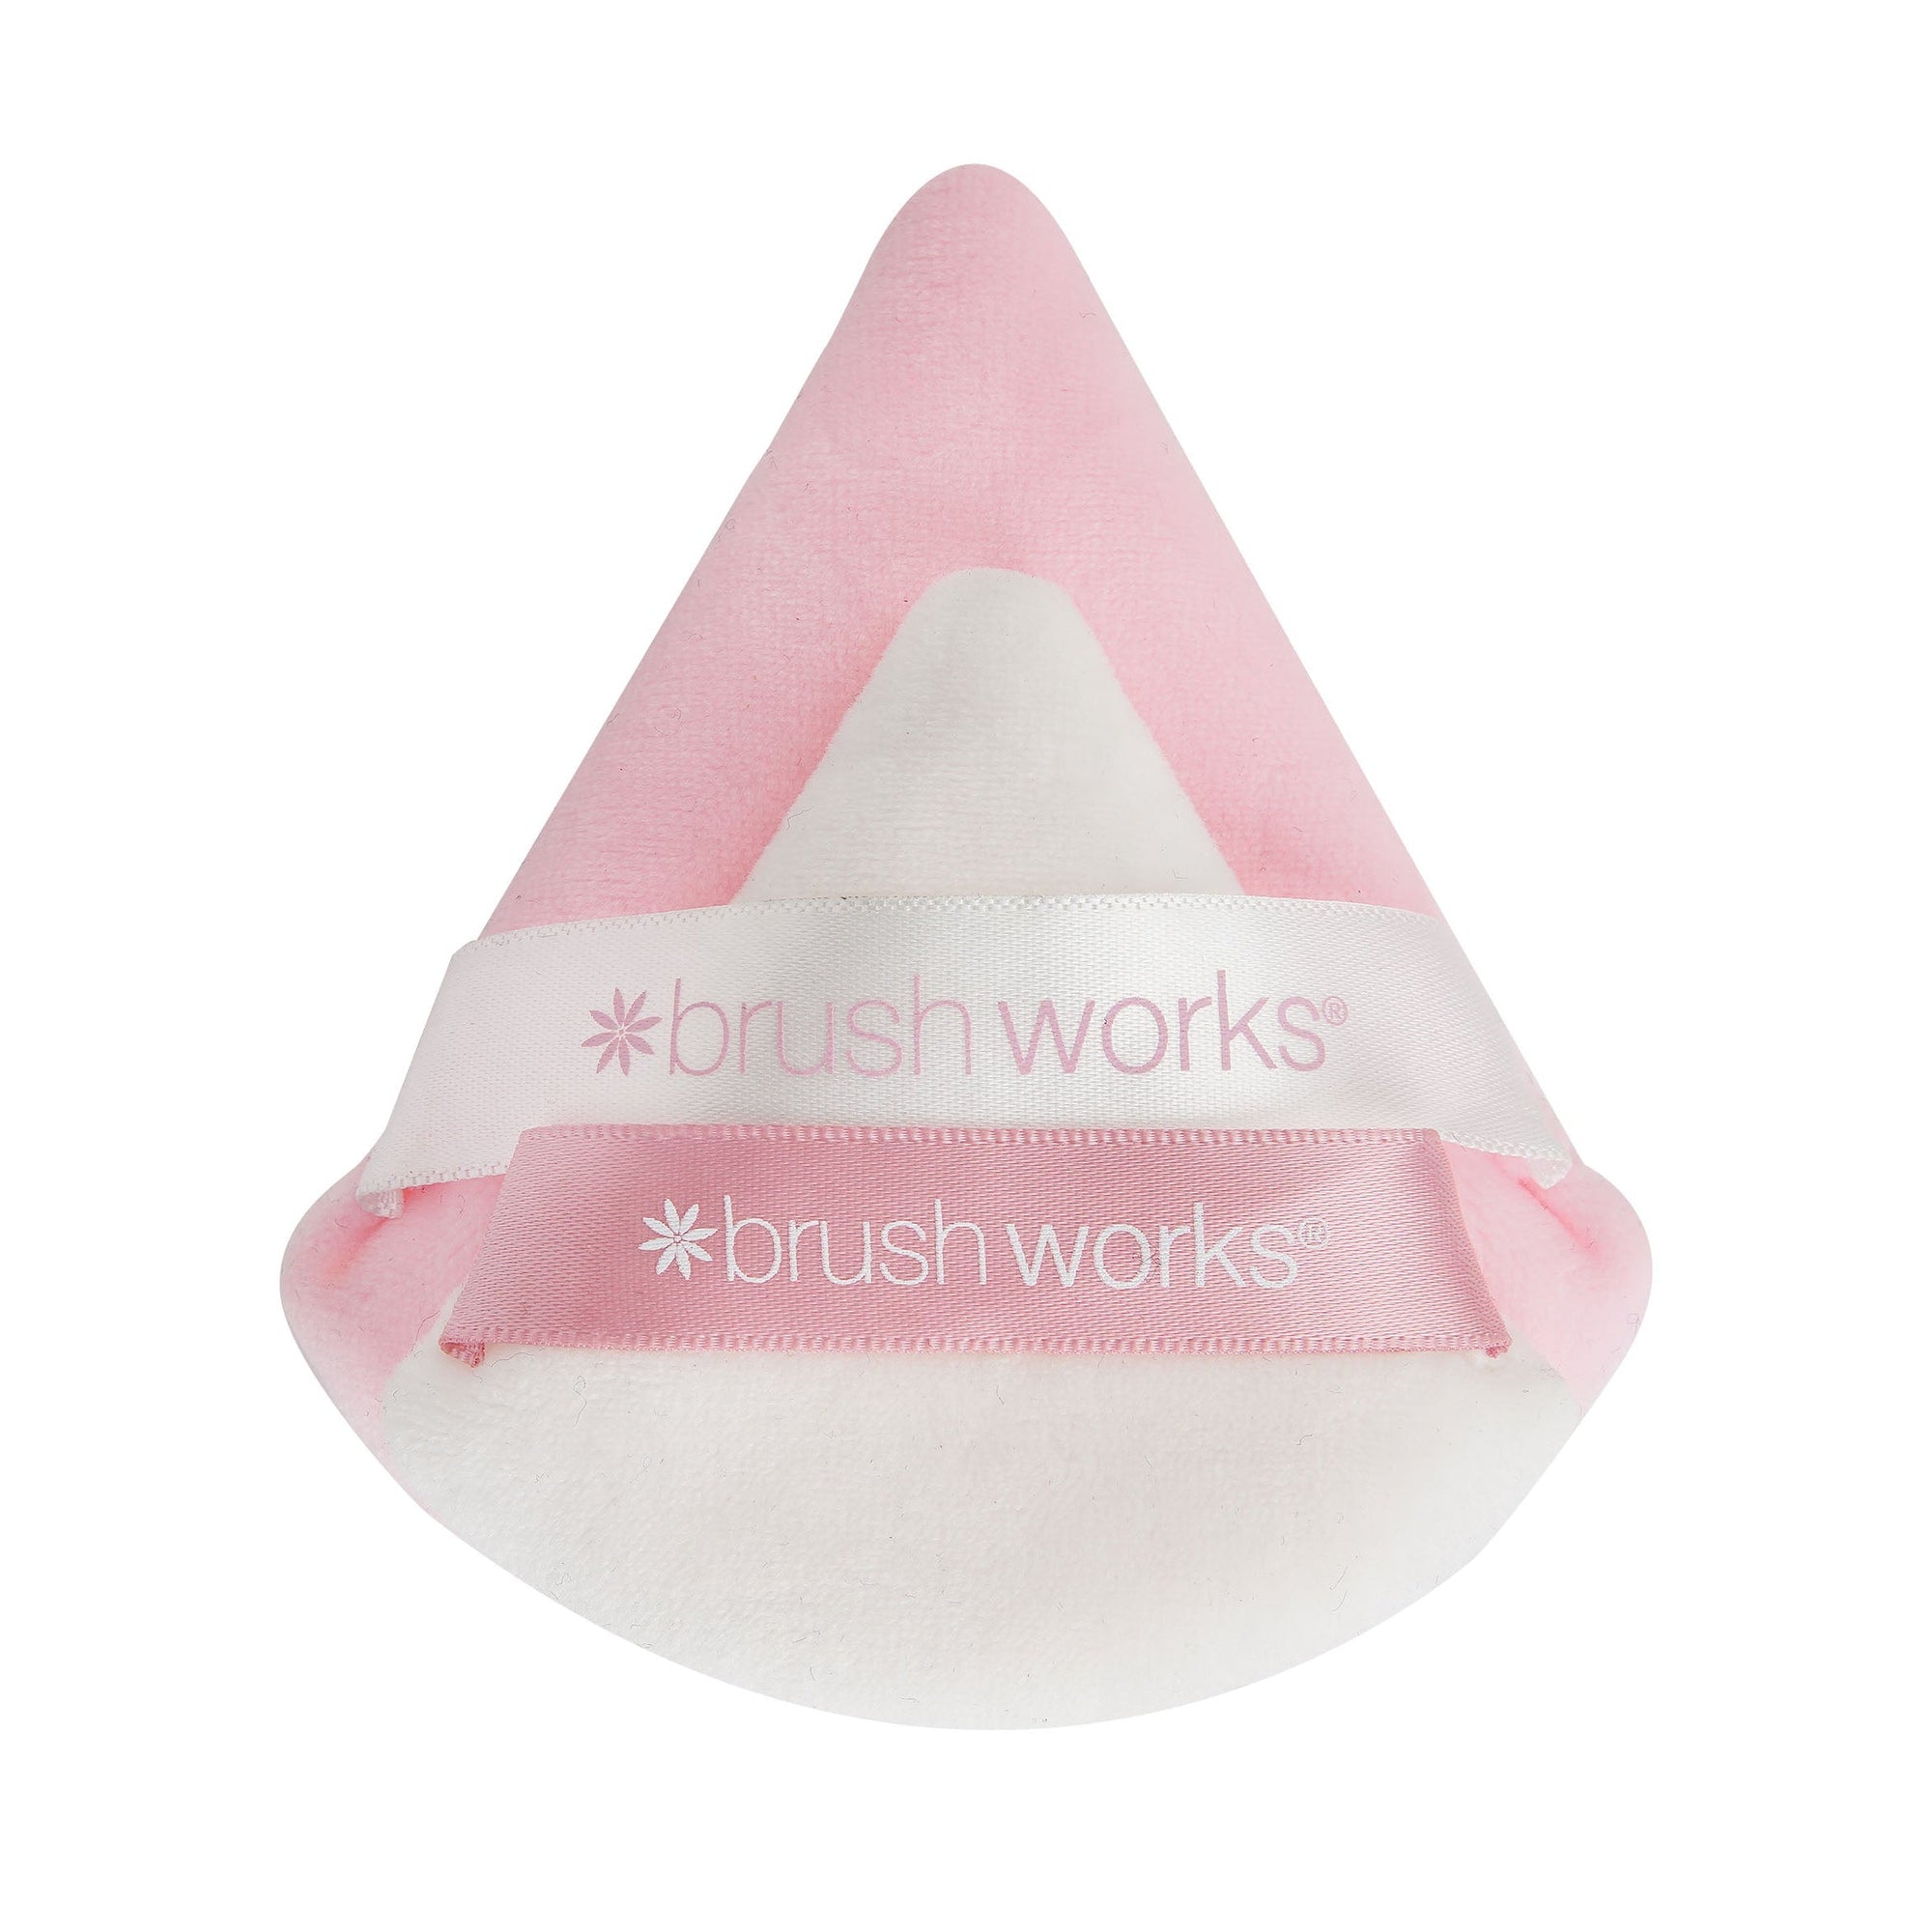 Brush Works Triangular Powder Puff Duo